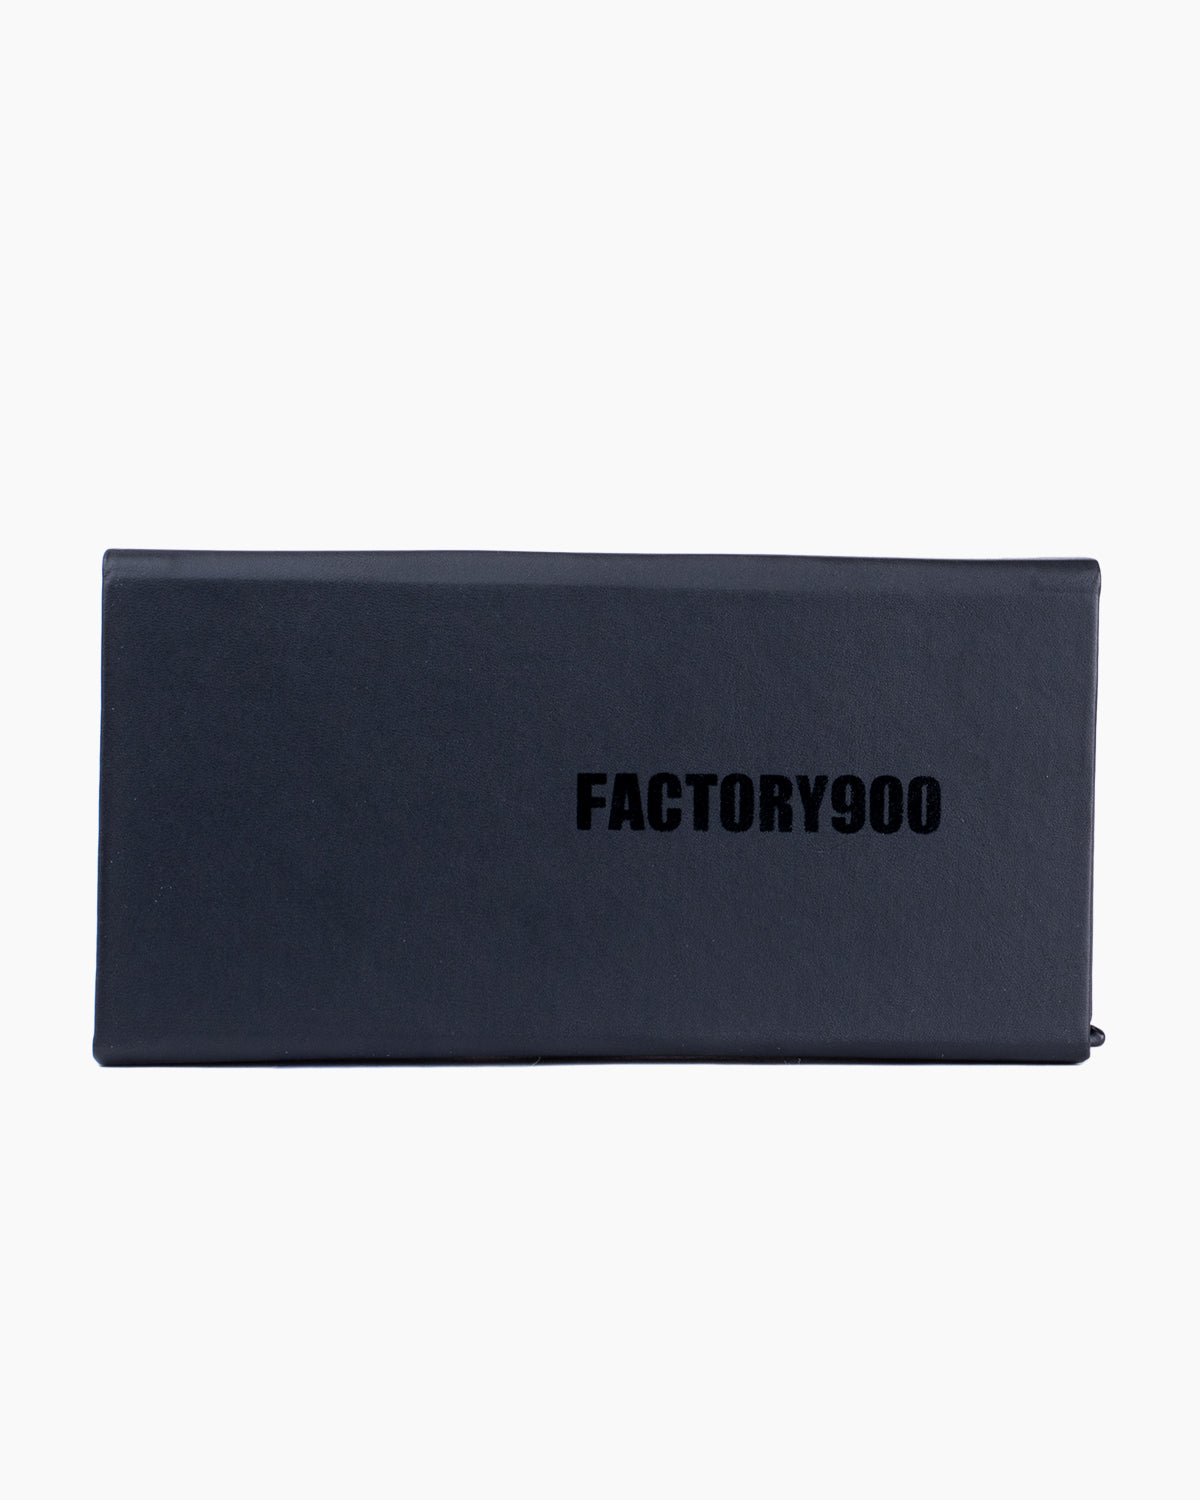 Factory 900-RF019-001 | glasses bar